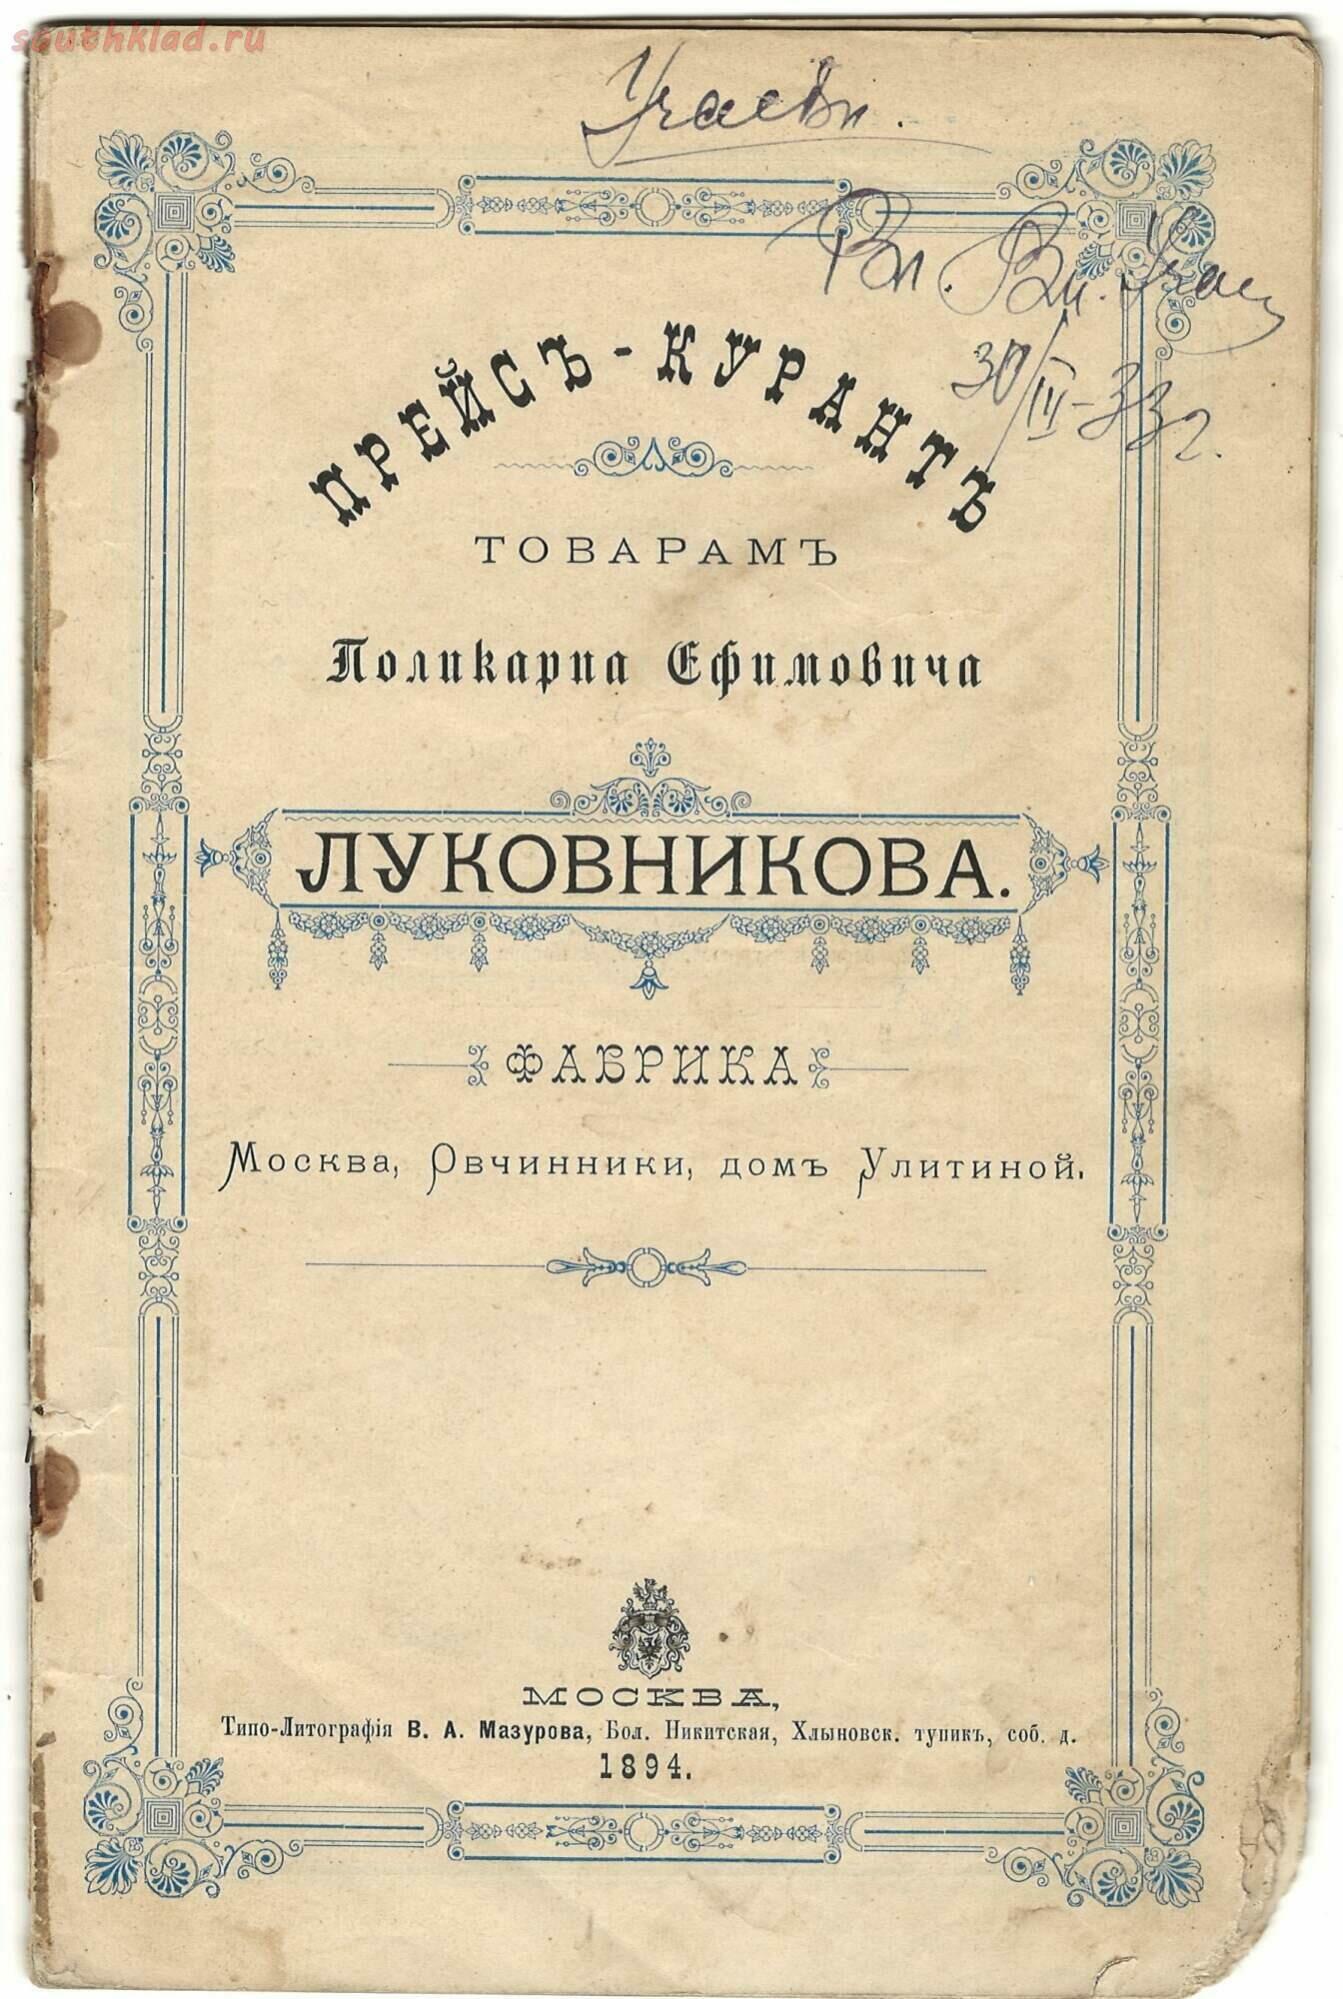 Фабрика ваксы и чернил П. Луковникова 1894 года История,Реклама